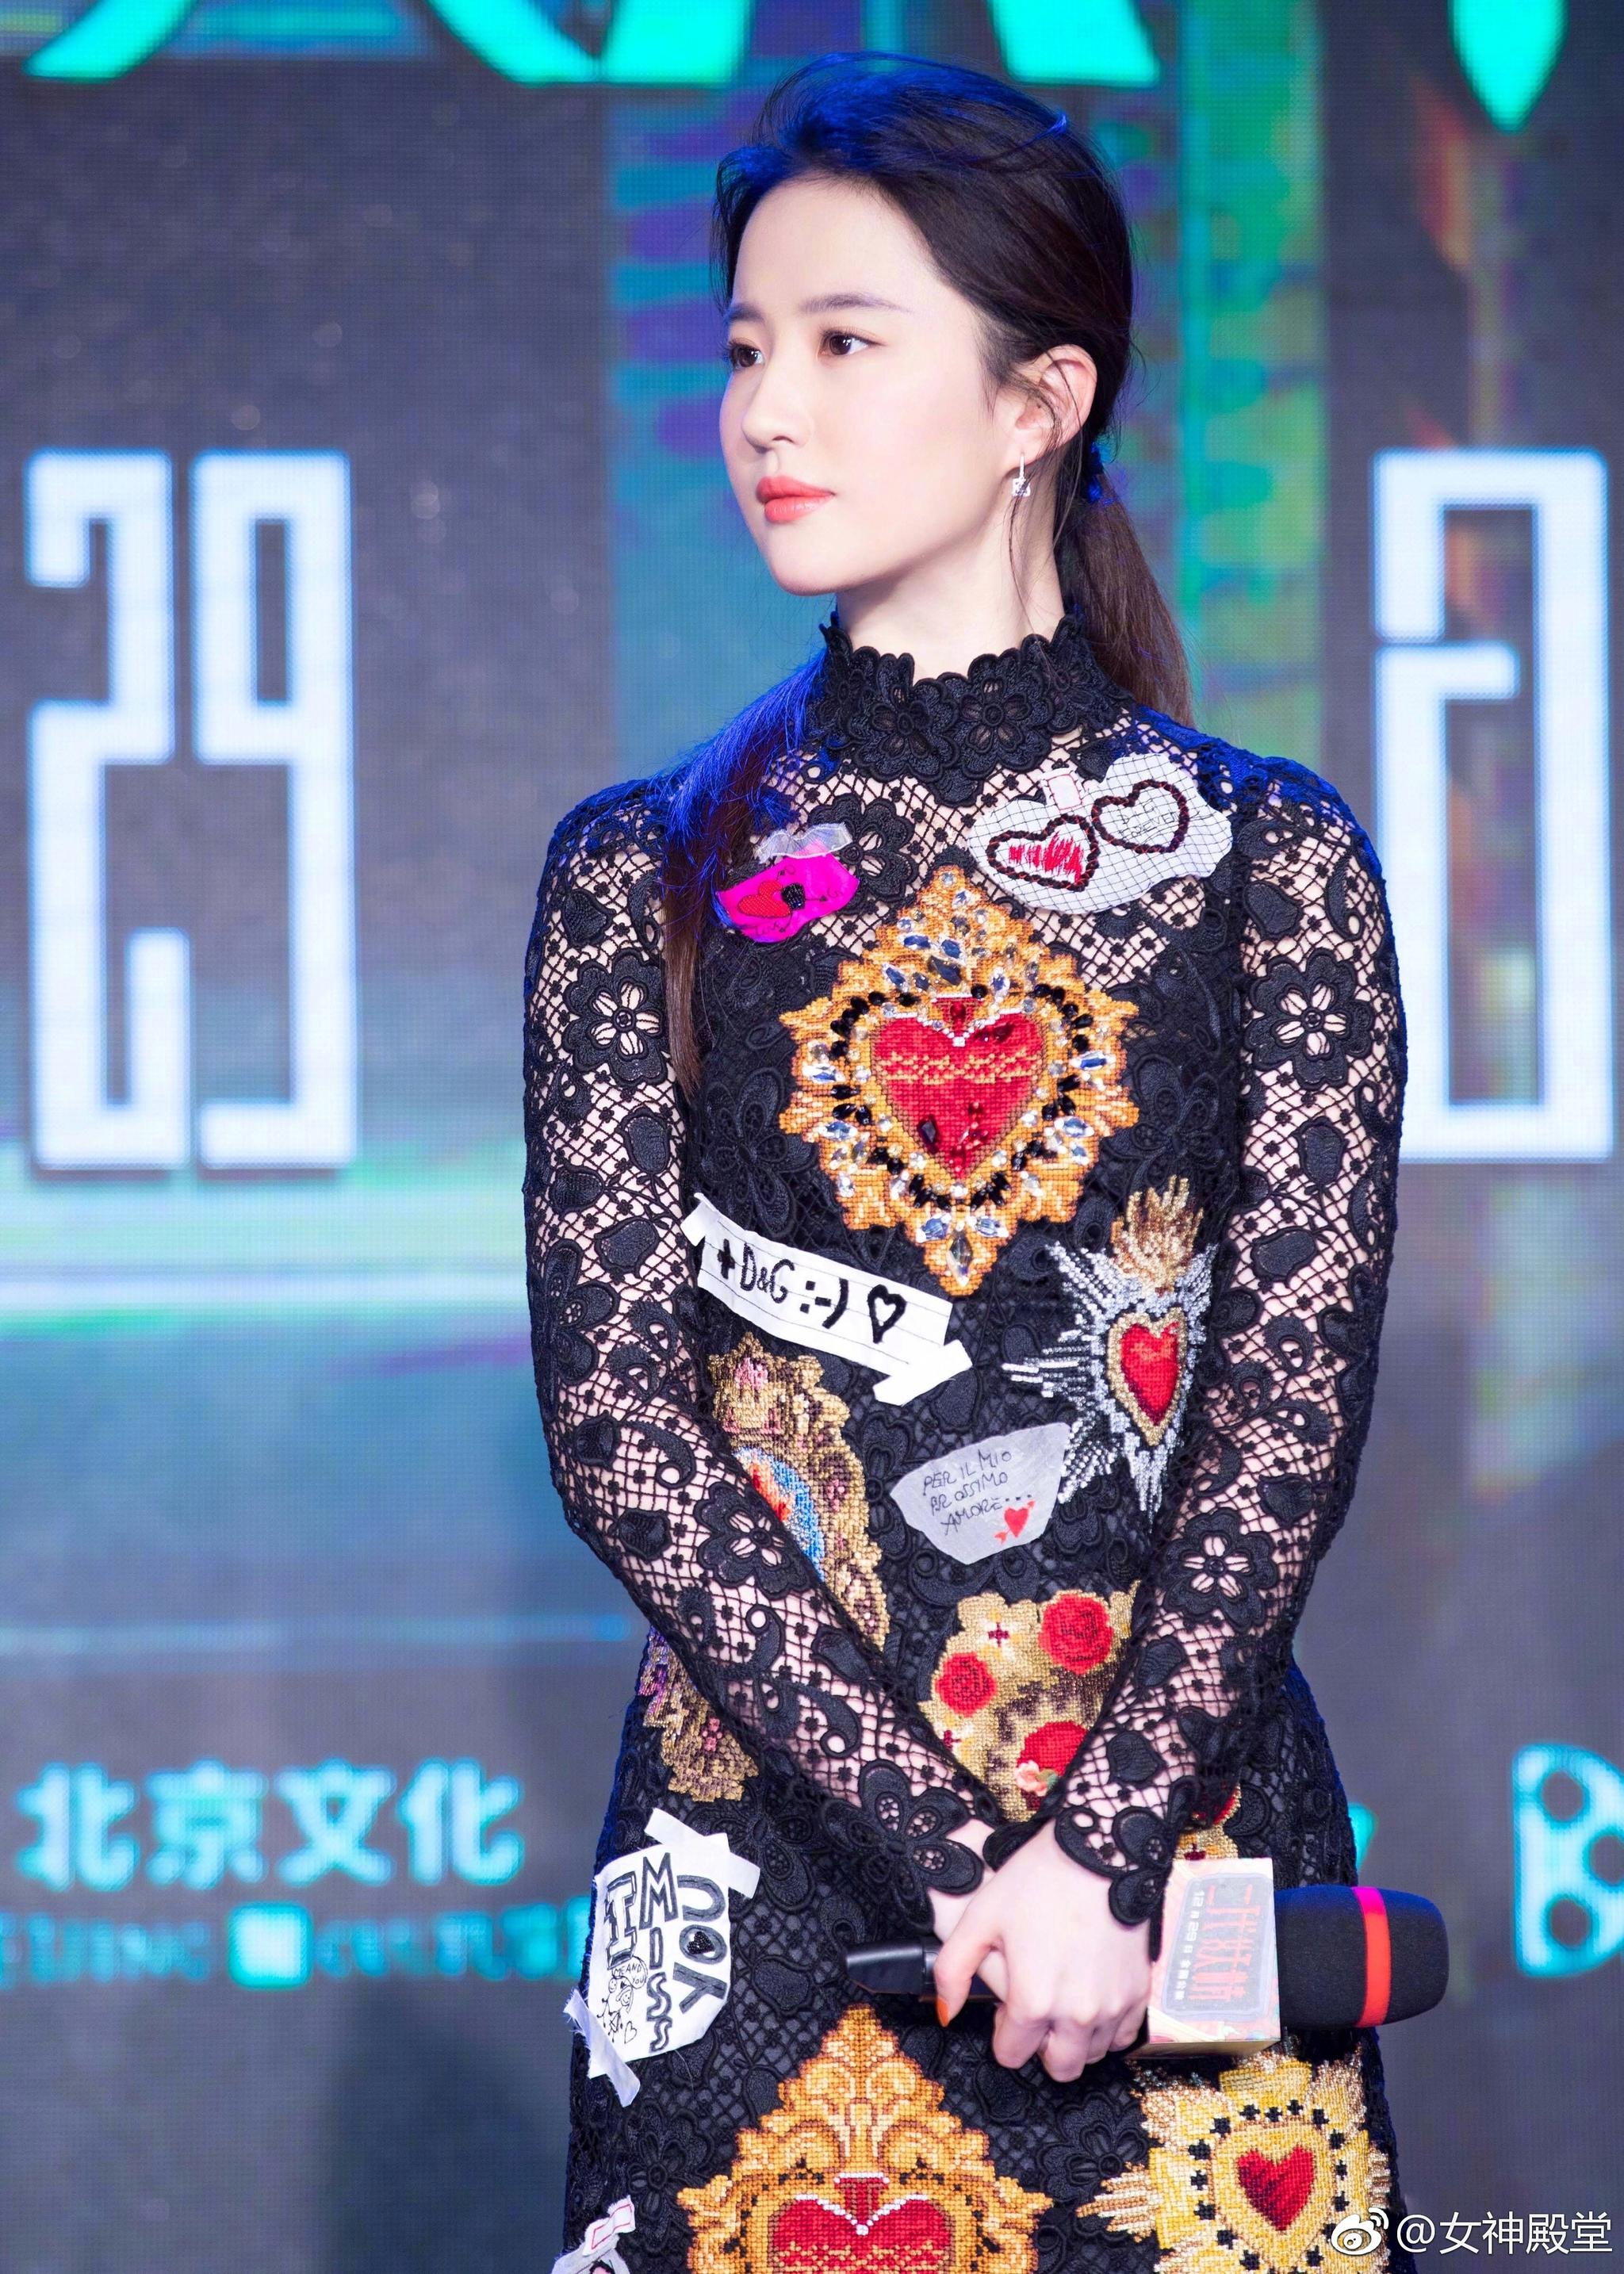 刘亦菲出席某活动,身着黑色印花连衣裙,简直就